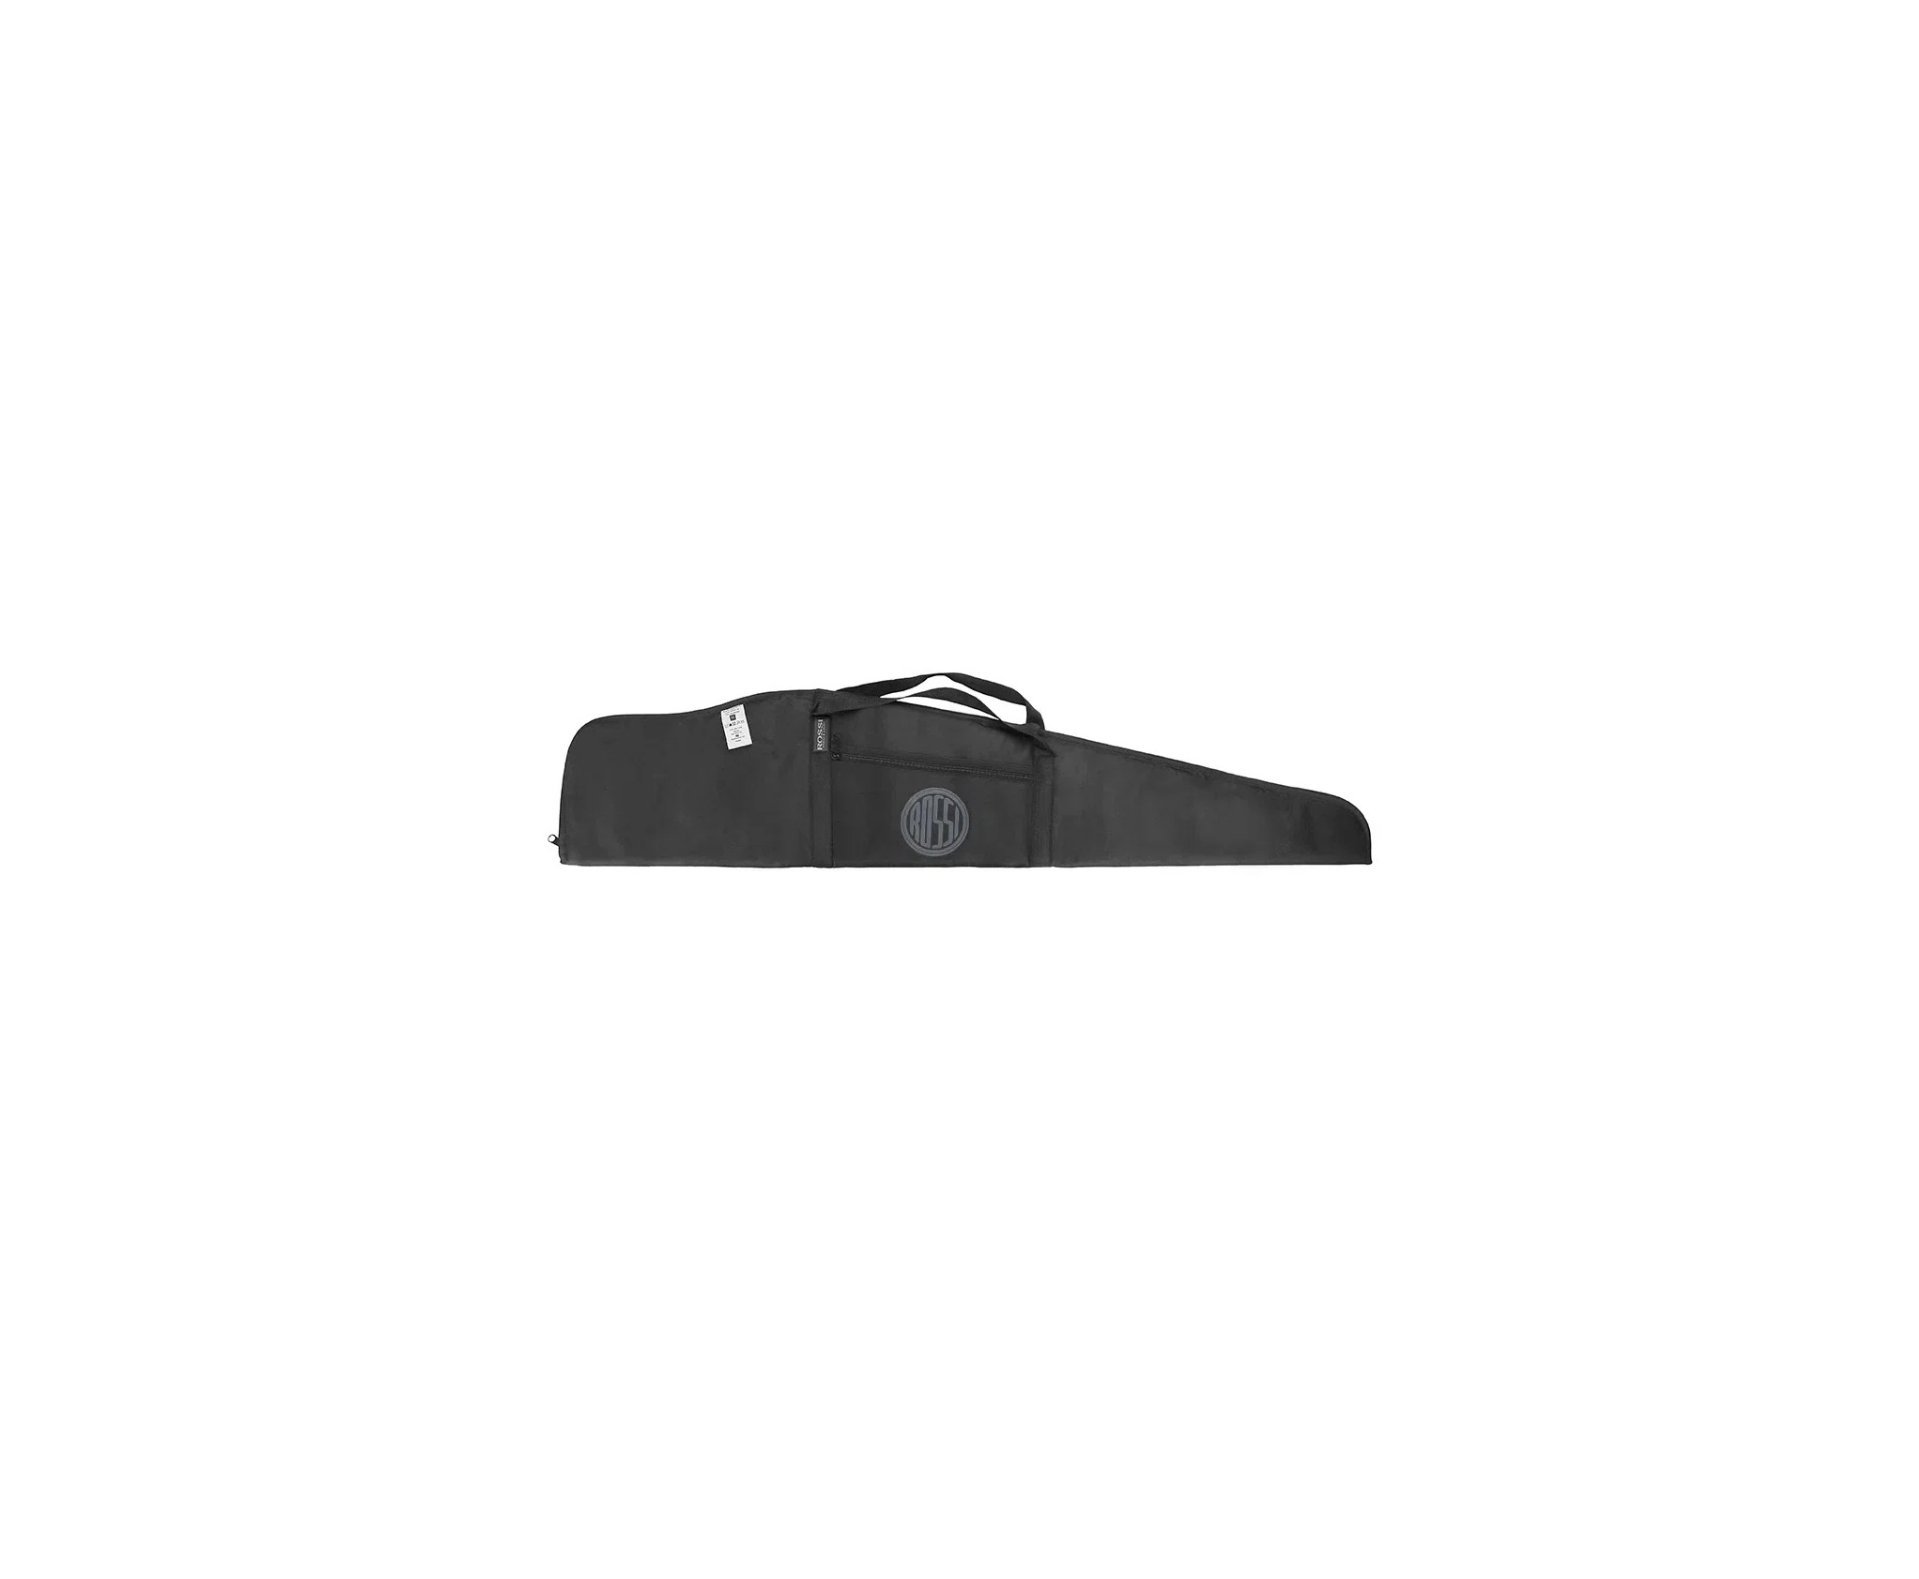 Carabina de Pressão PCP Hatsan Flash 101 VR com Válvula Reguladora 5.5 + Bomba + Capa Rossi